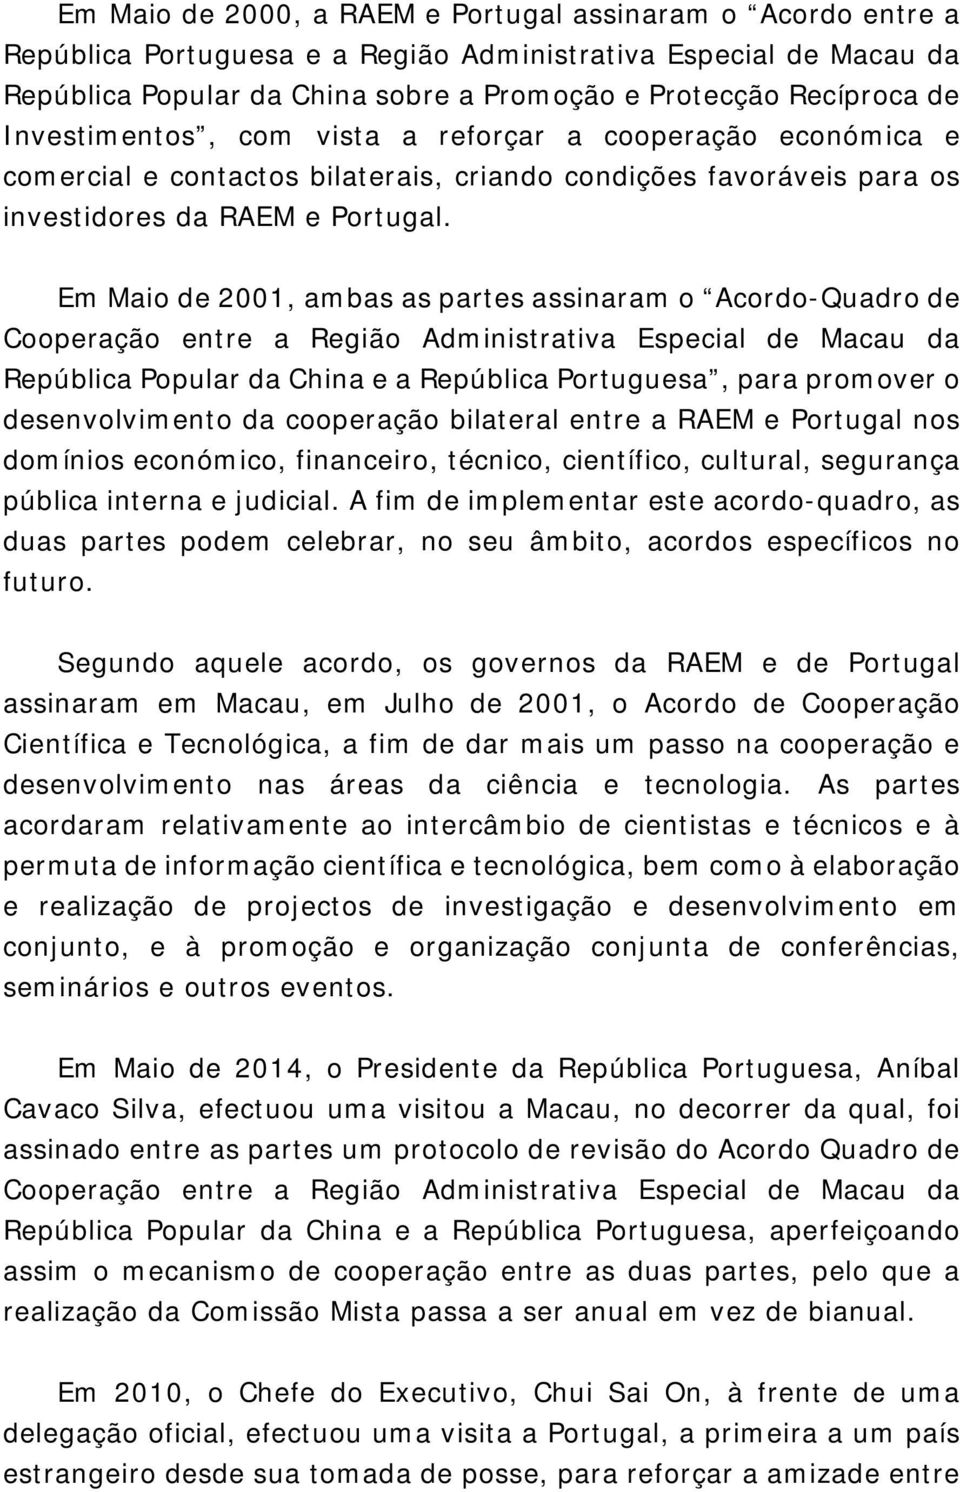 Em Maio de 2001, ambas as partes assinaram o Acordo-Quadro de Cooperação entre a Região Administrativa Especial de Macau da República Popular da China e a República Portuguesa, para promover o